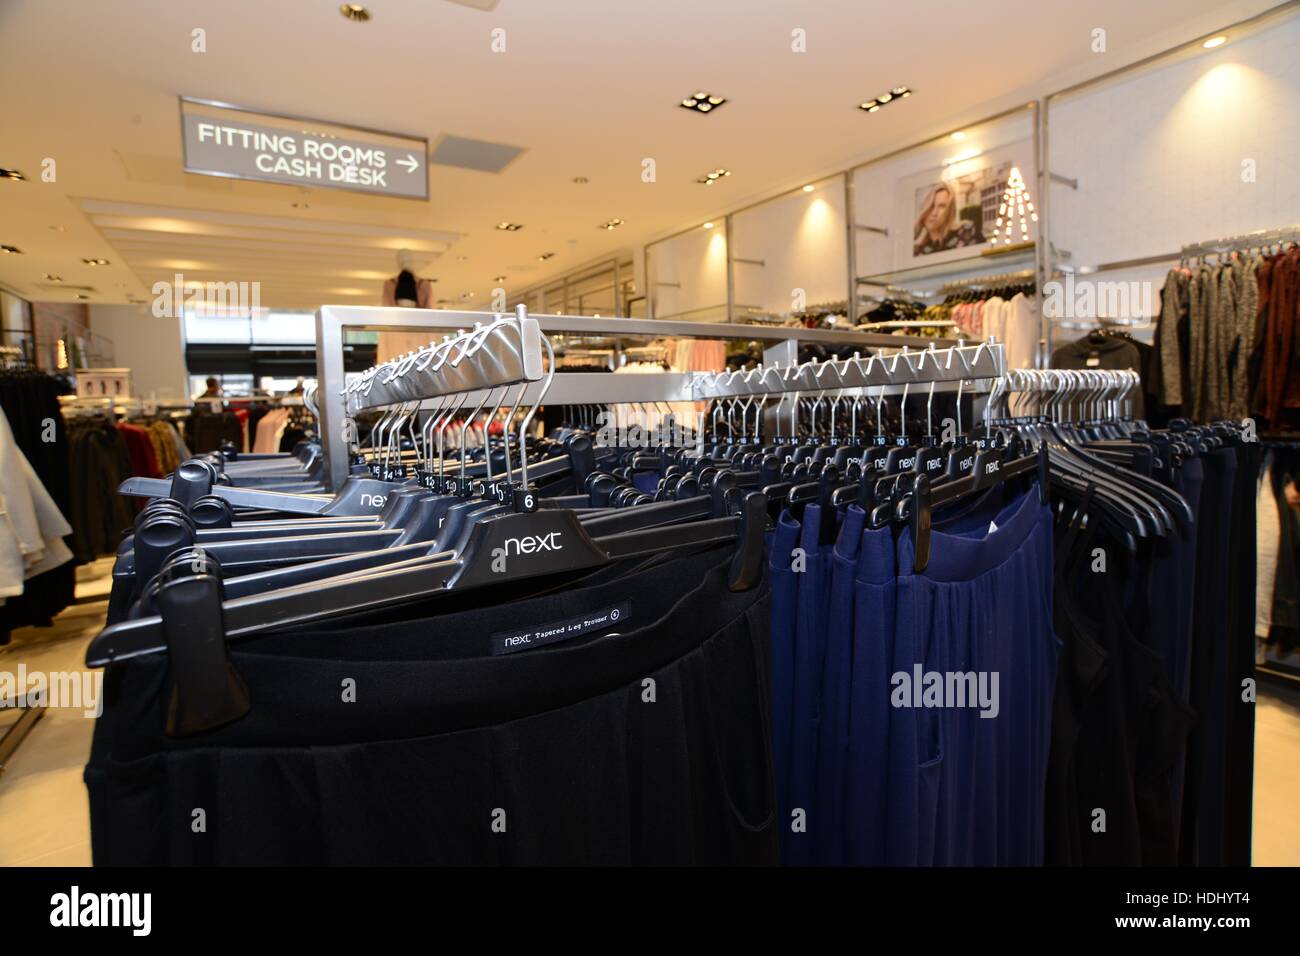 Next fashion clothing retailer. Stock Photo